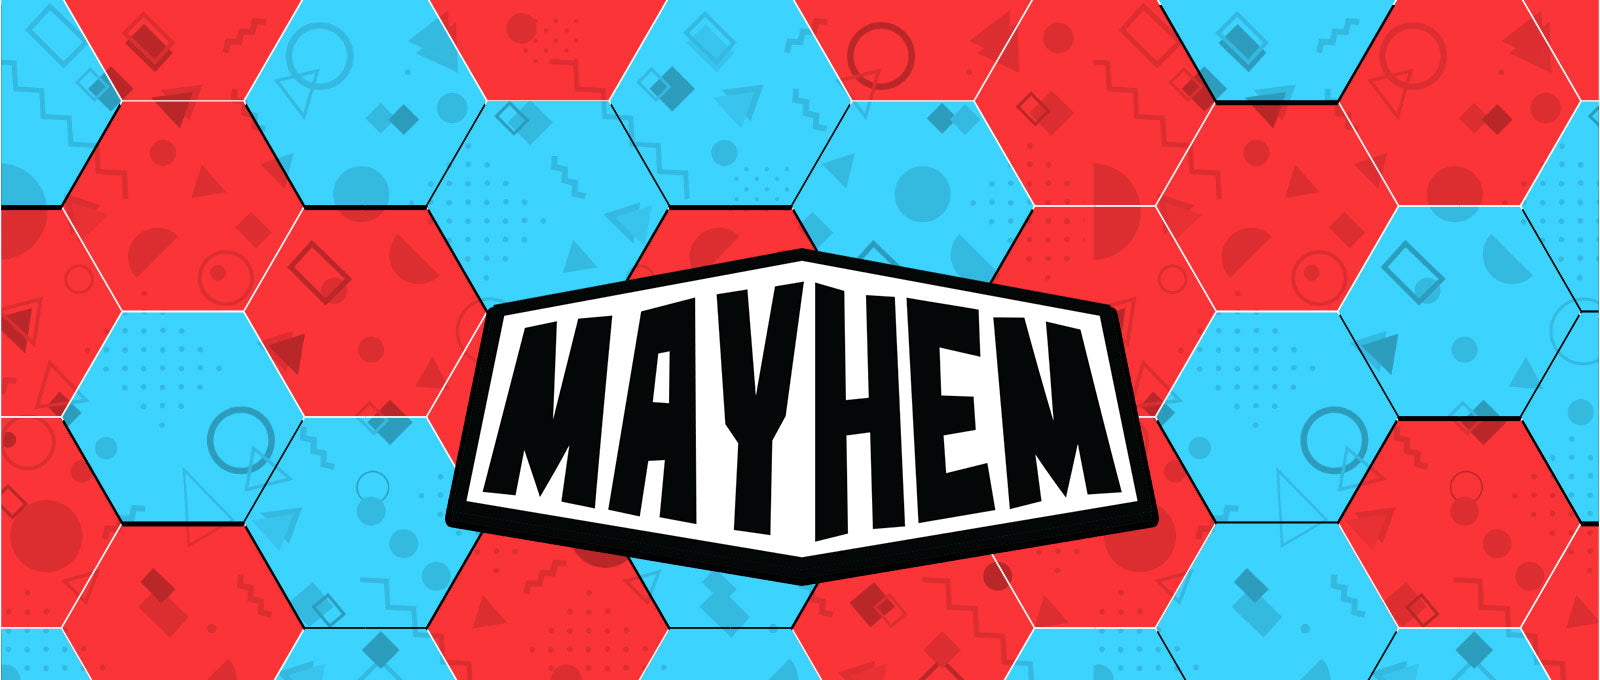 THE MAYHEM SYSTEM: BRINGING THE MAYHEM TO YOUR WORLD